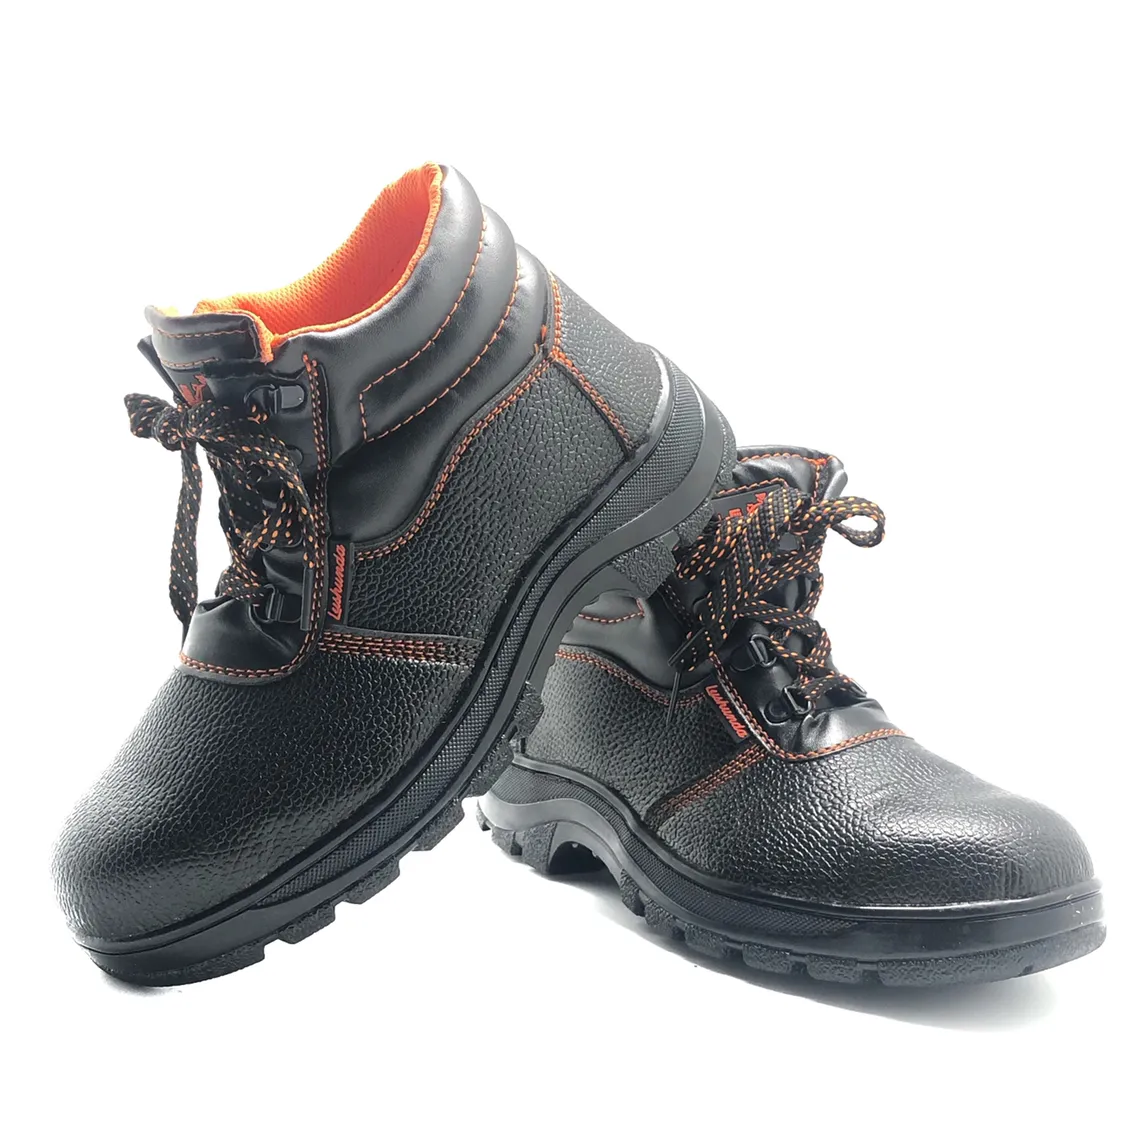 ระบายอากาศ Tpu แฟชั่นการรักษาความปลอดภัยนิ้วเท้าเหล็กทำงานผู้ชายผู้หญิงรองเท้าหนังความปลอดภัย